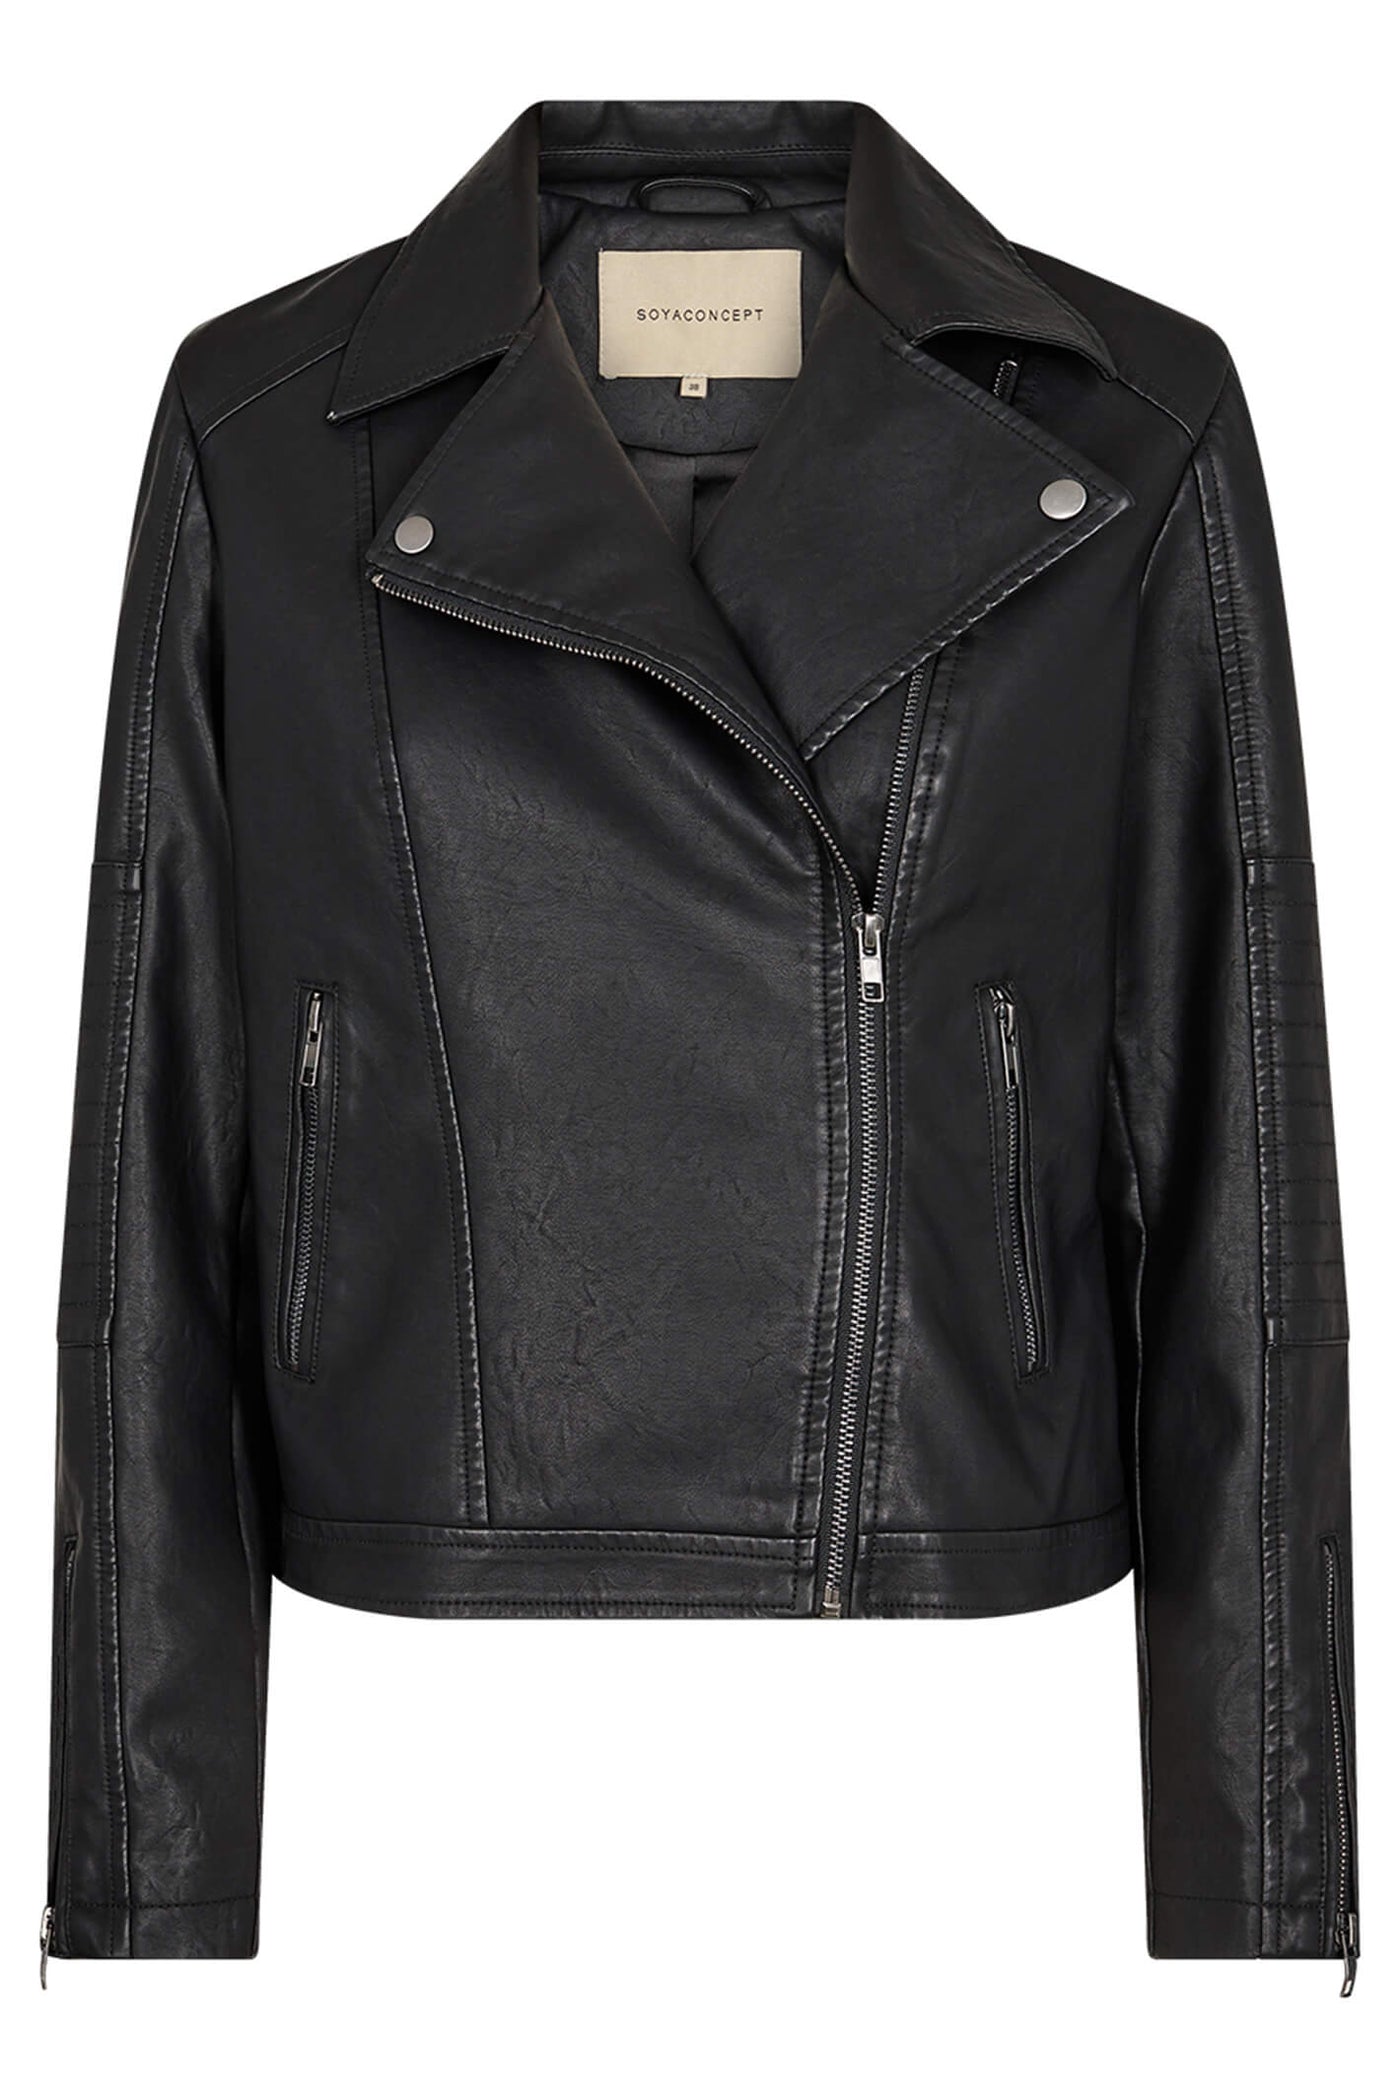 Soyaconcept 40220-20 SC-Gunilla 9999 Black Faux Leather Biker Style Jacket - Rouge Boutique